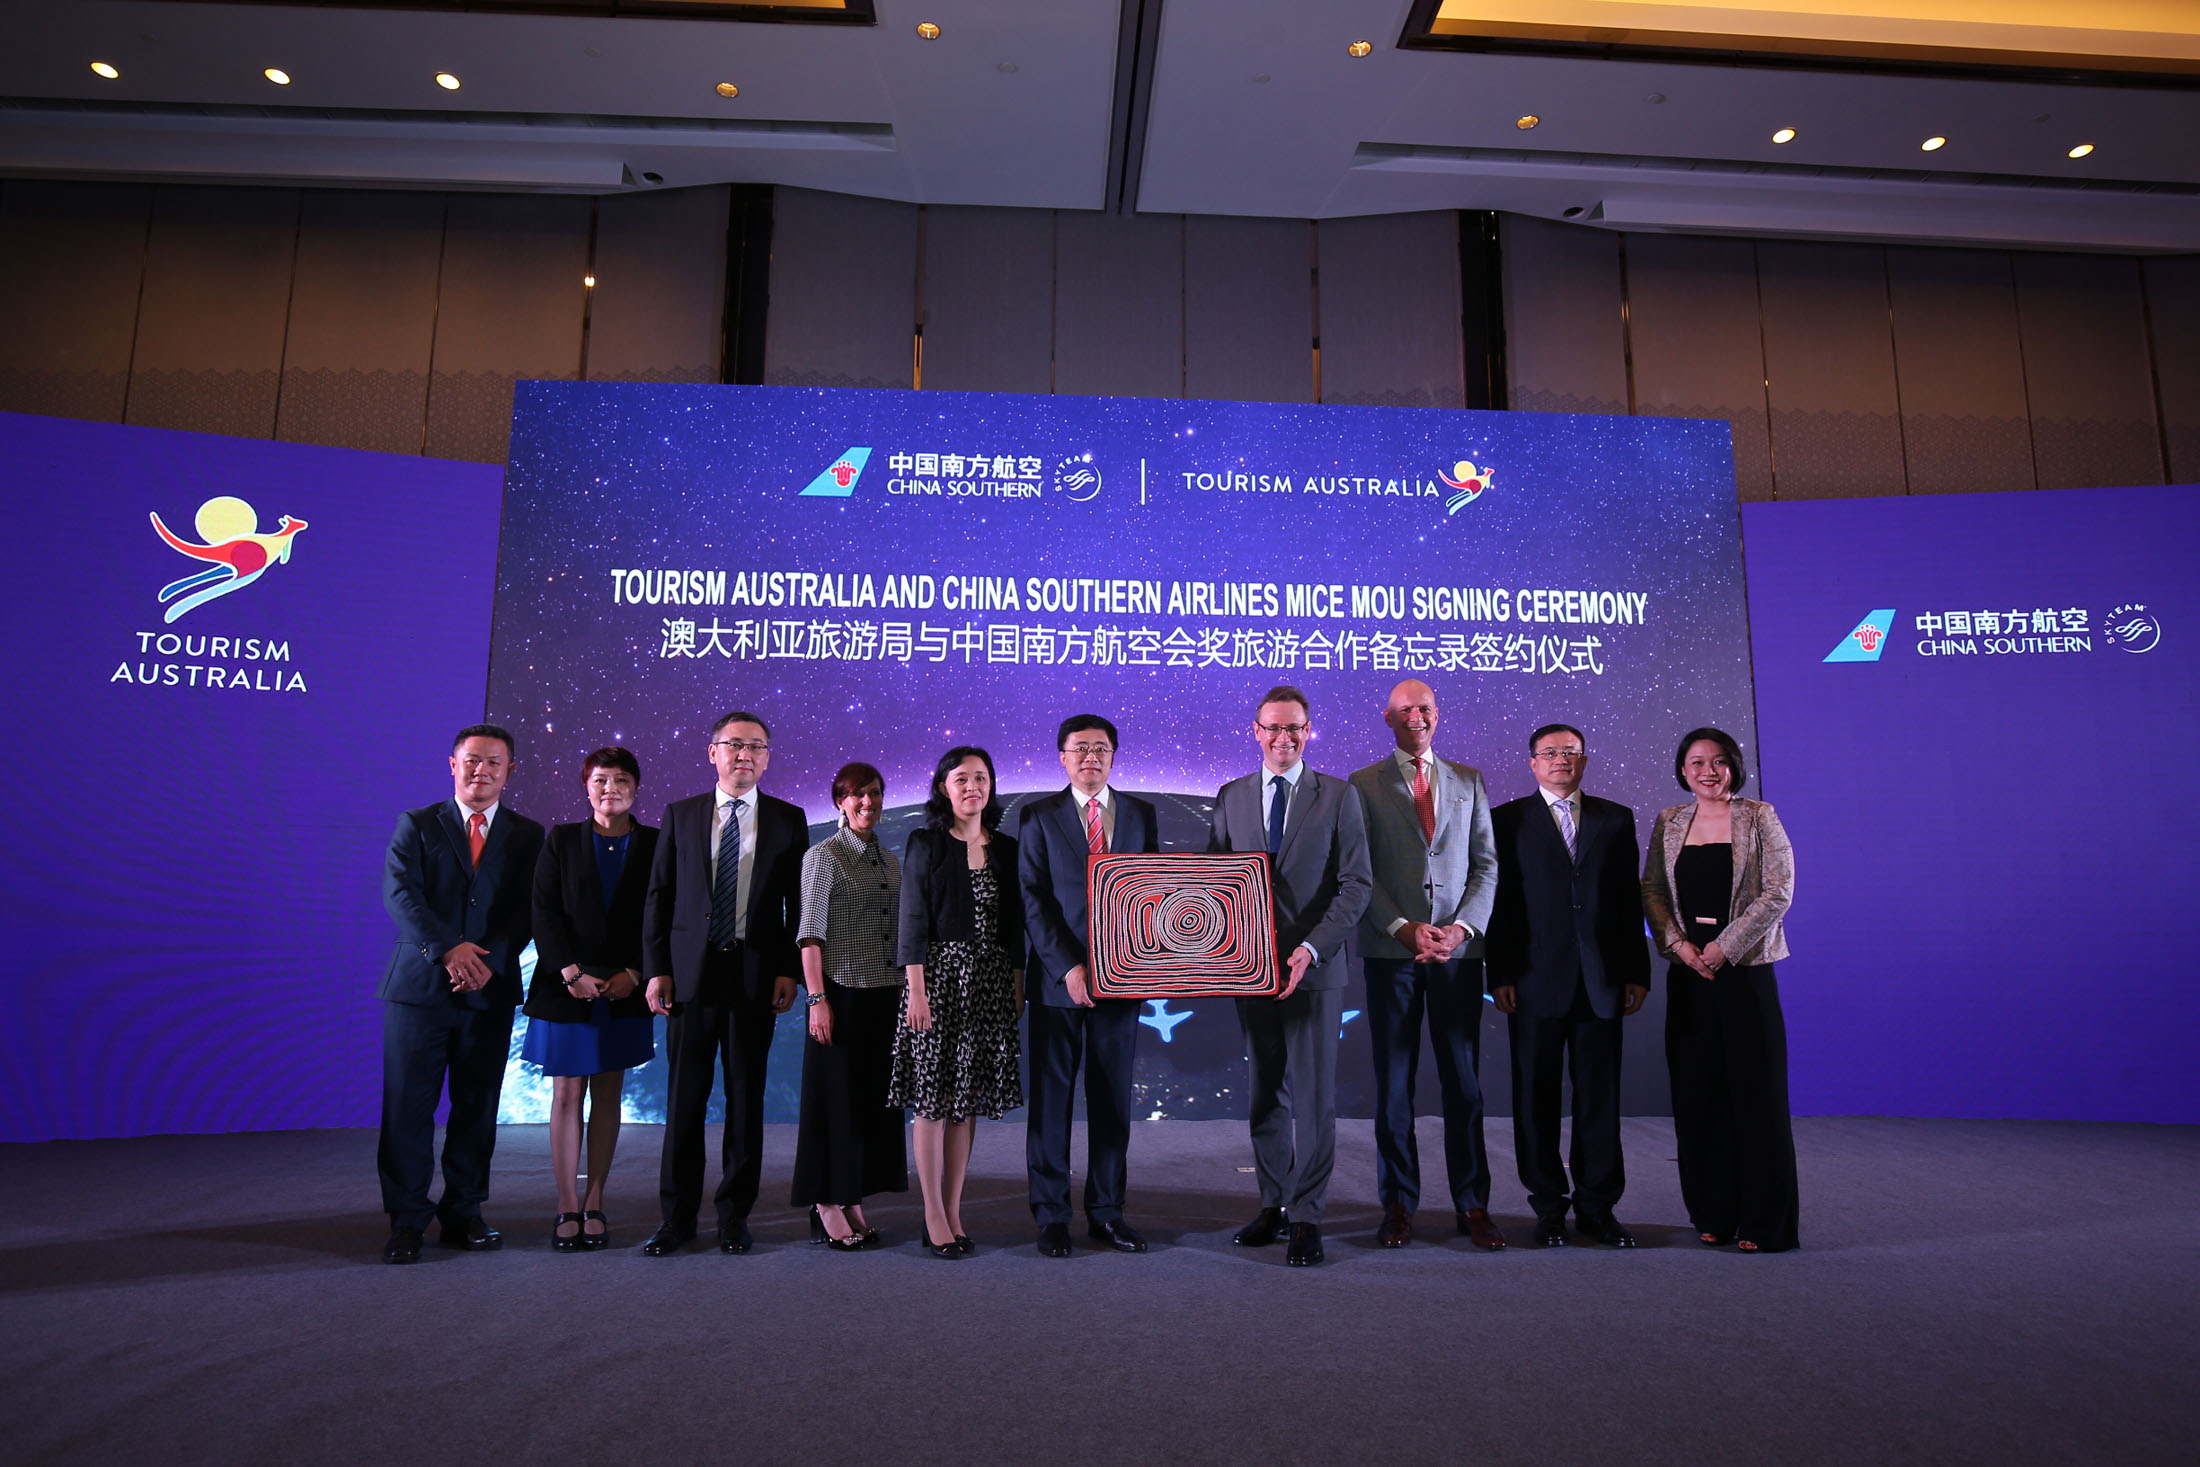 澳大利亚旅游局与中国南方航空签署合作协议 共赢赴澳商旅市场